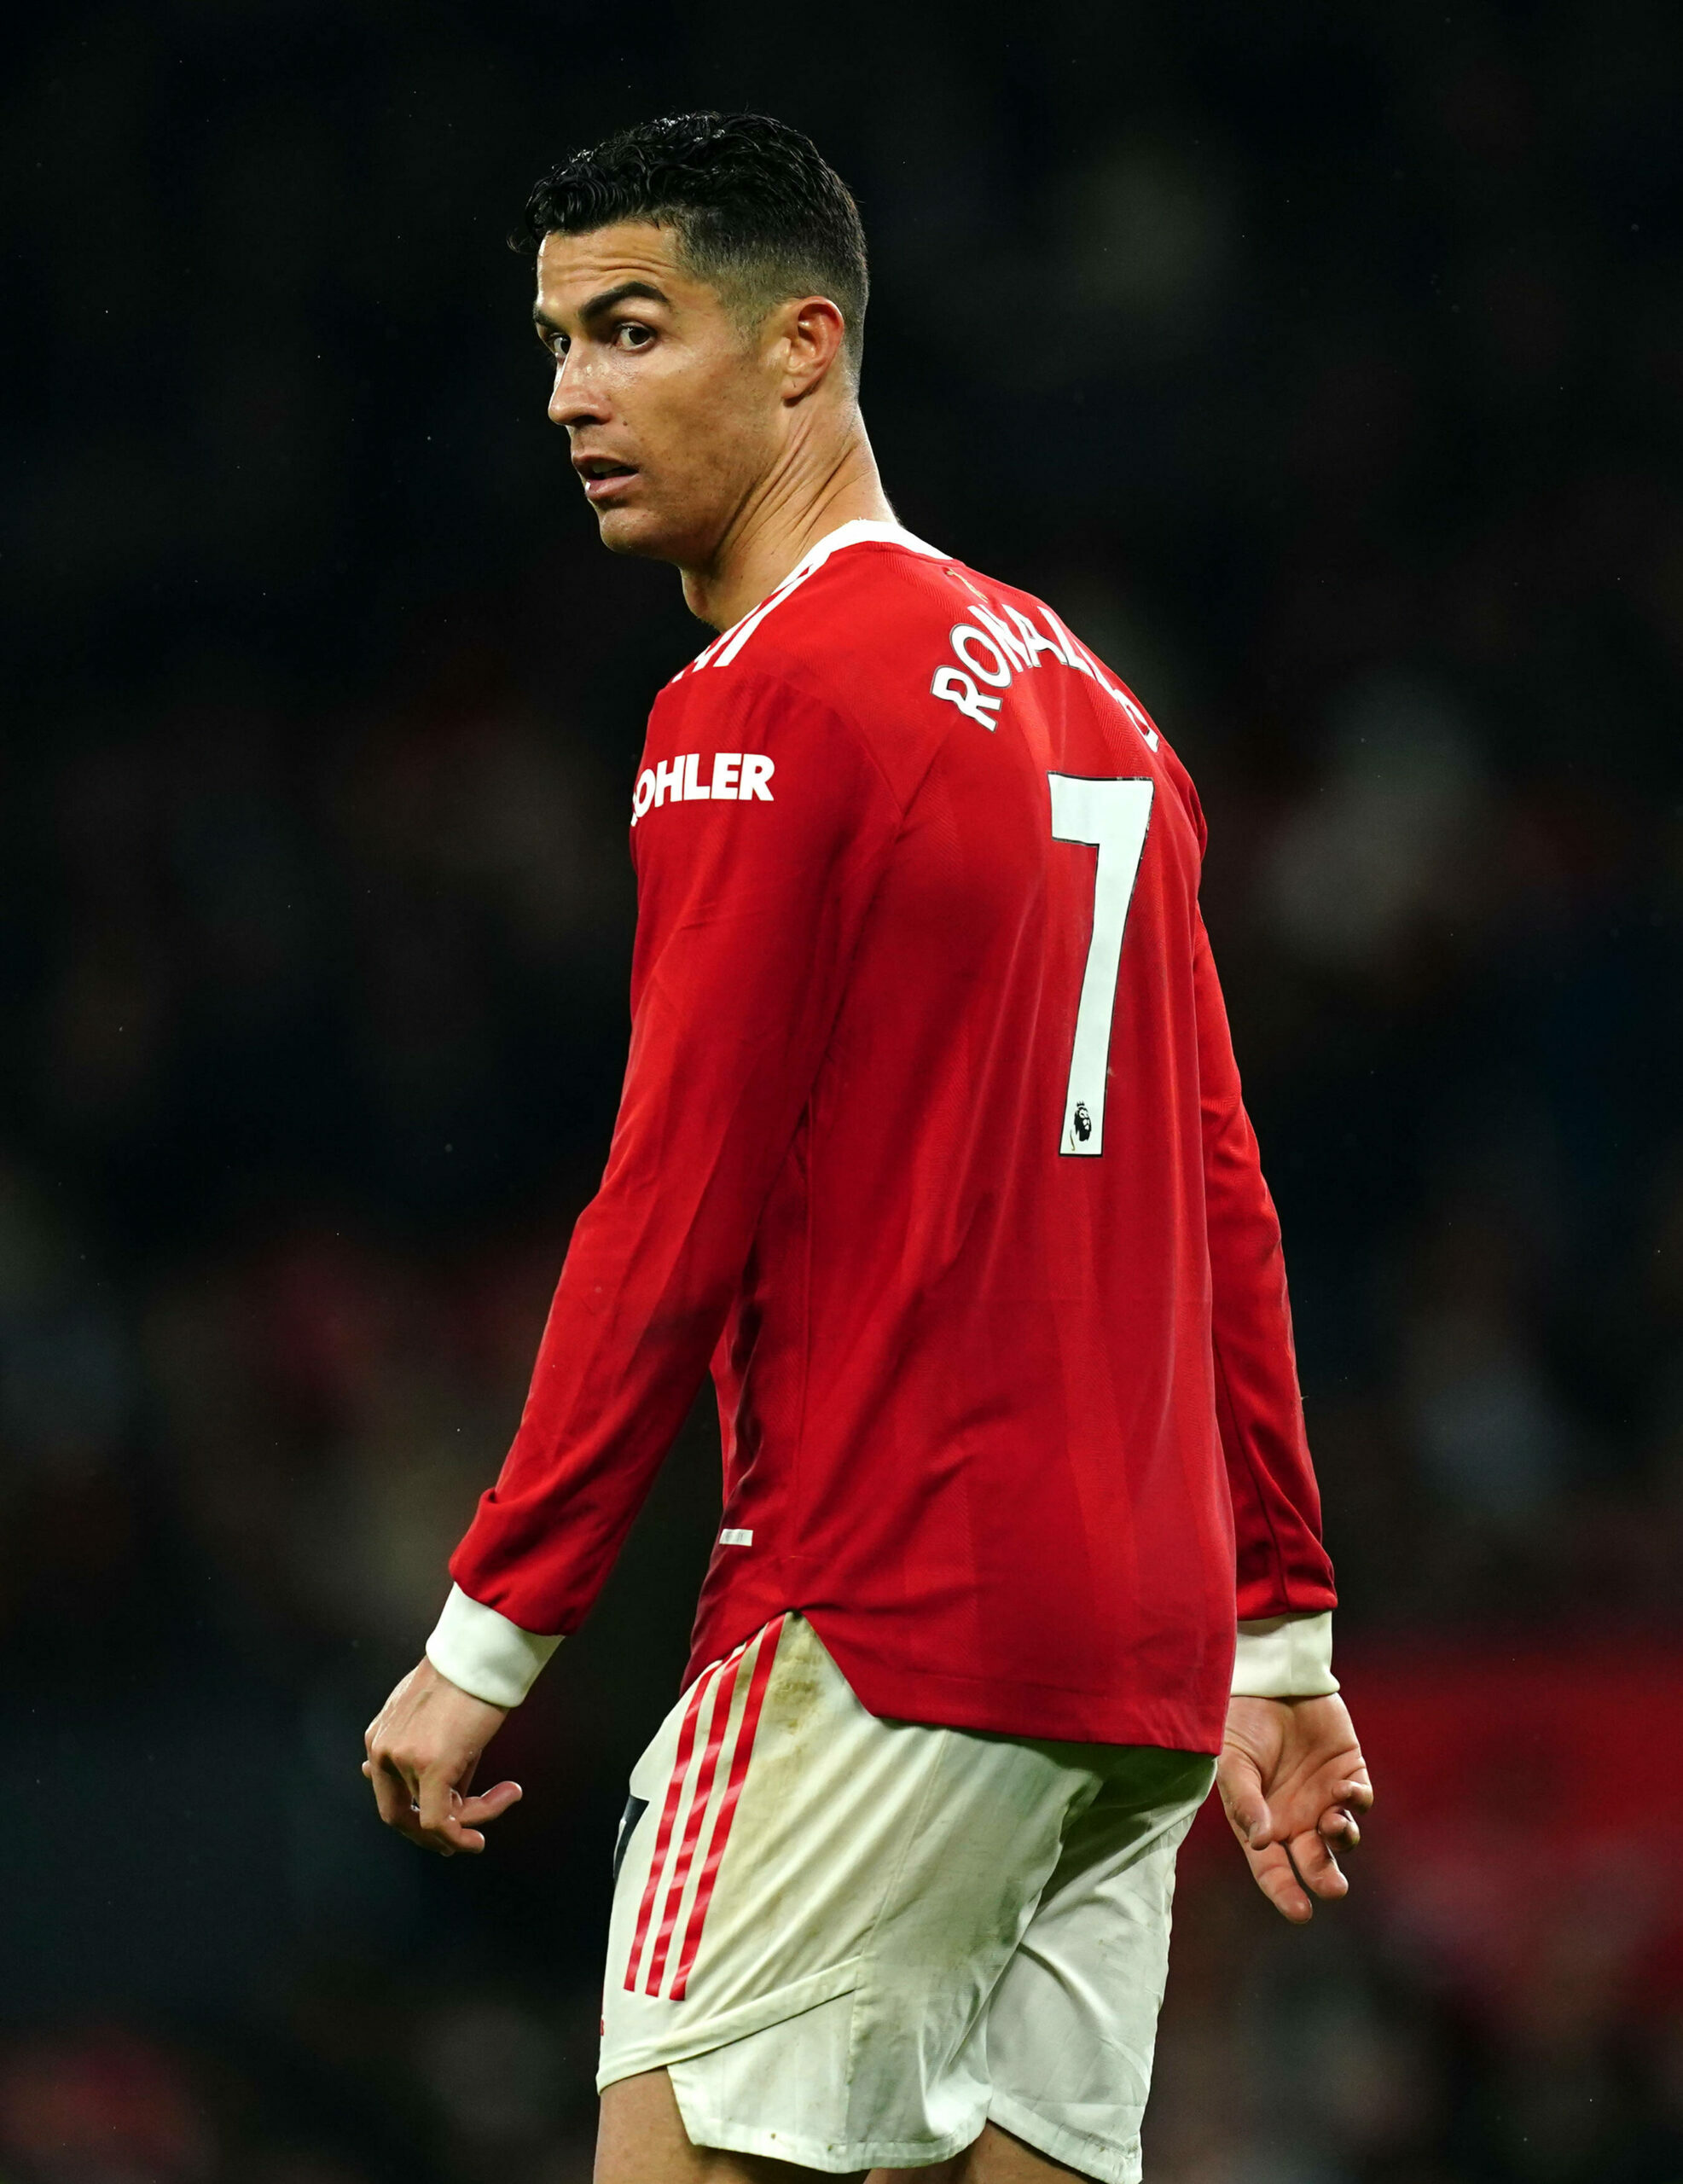 Cristiano Ronaldo verpasste die Auslandsreisen von Manchester United aus privaten Gründen.